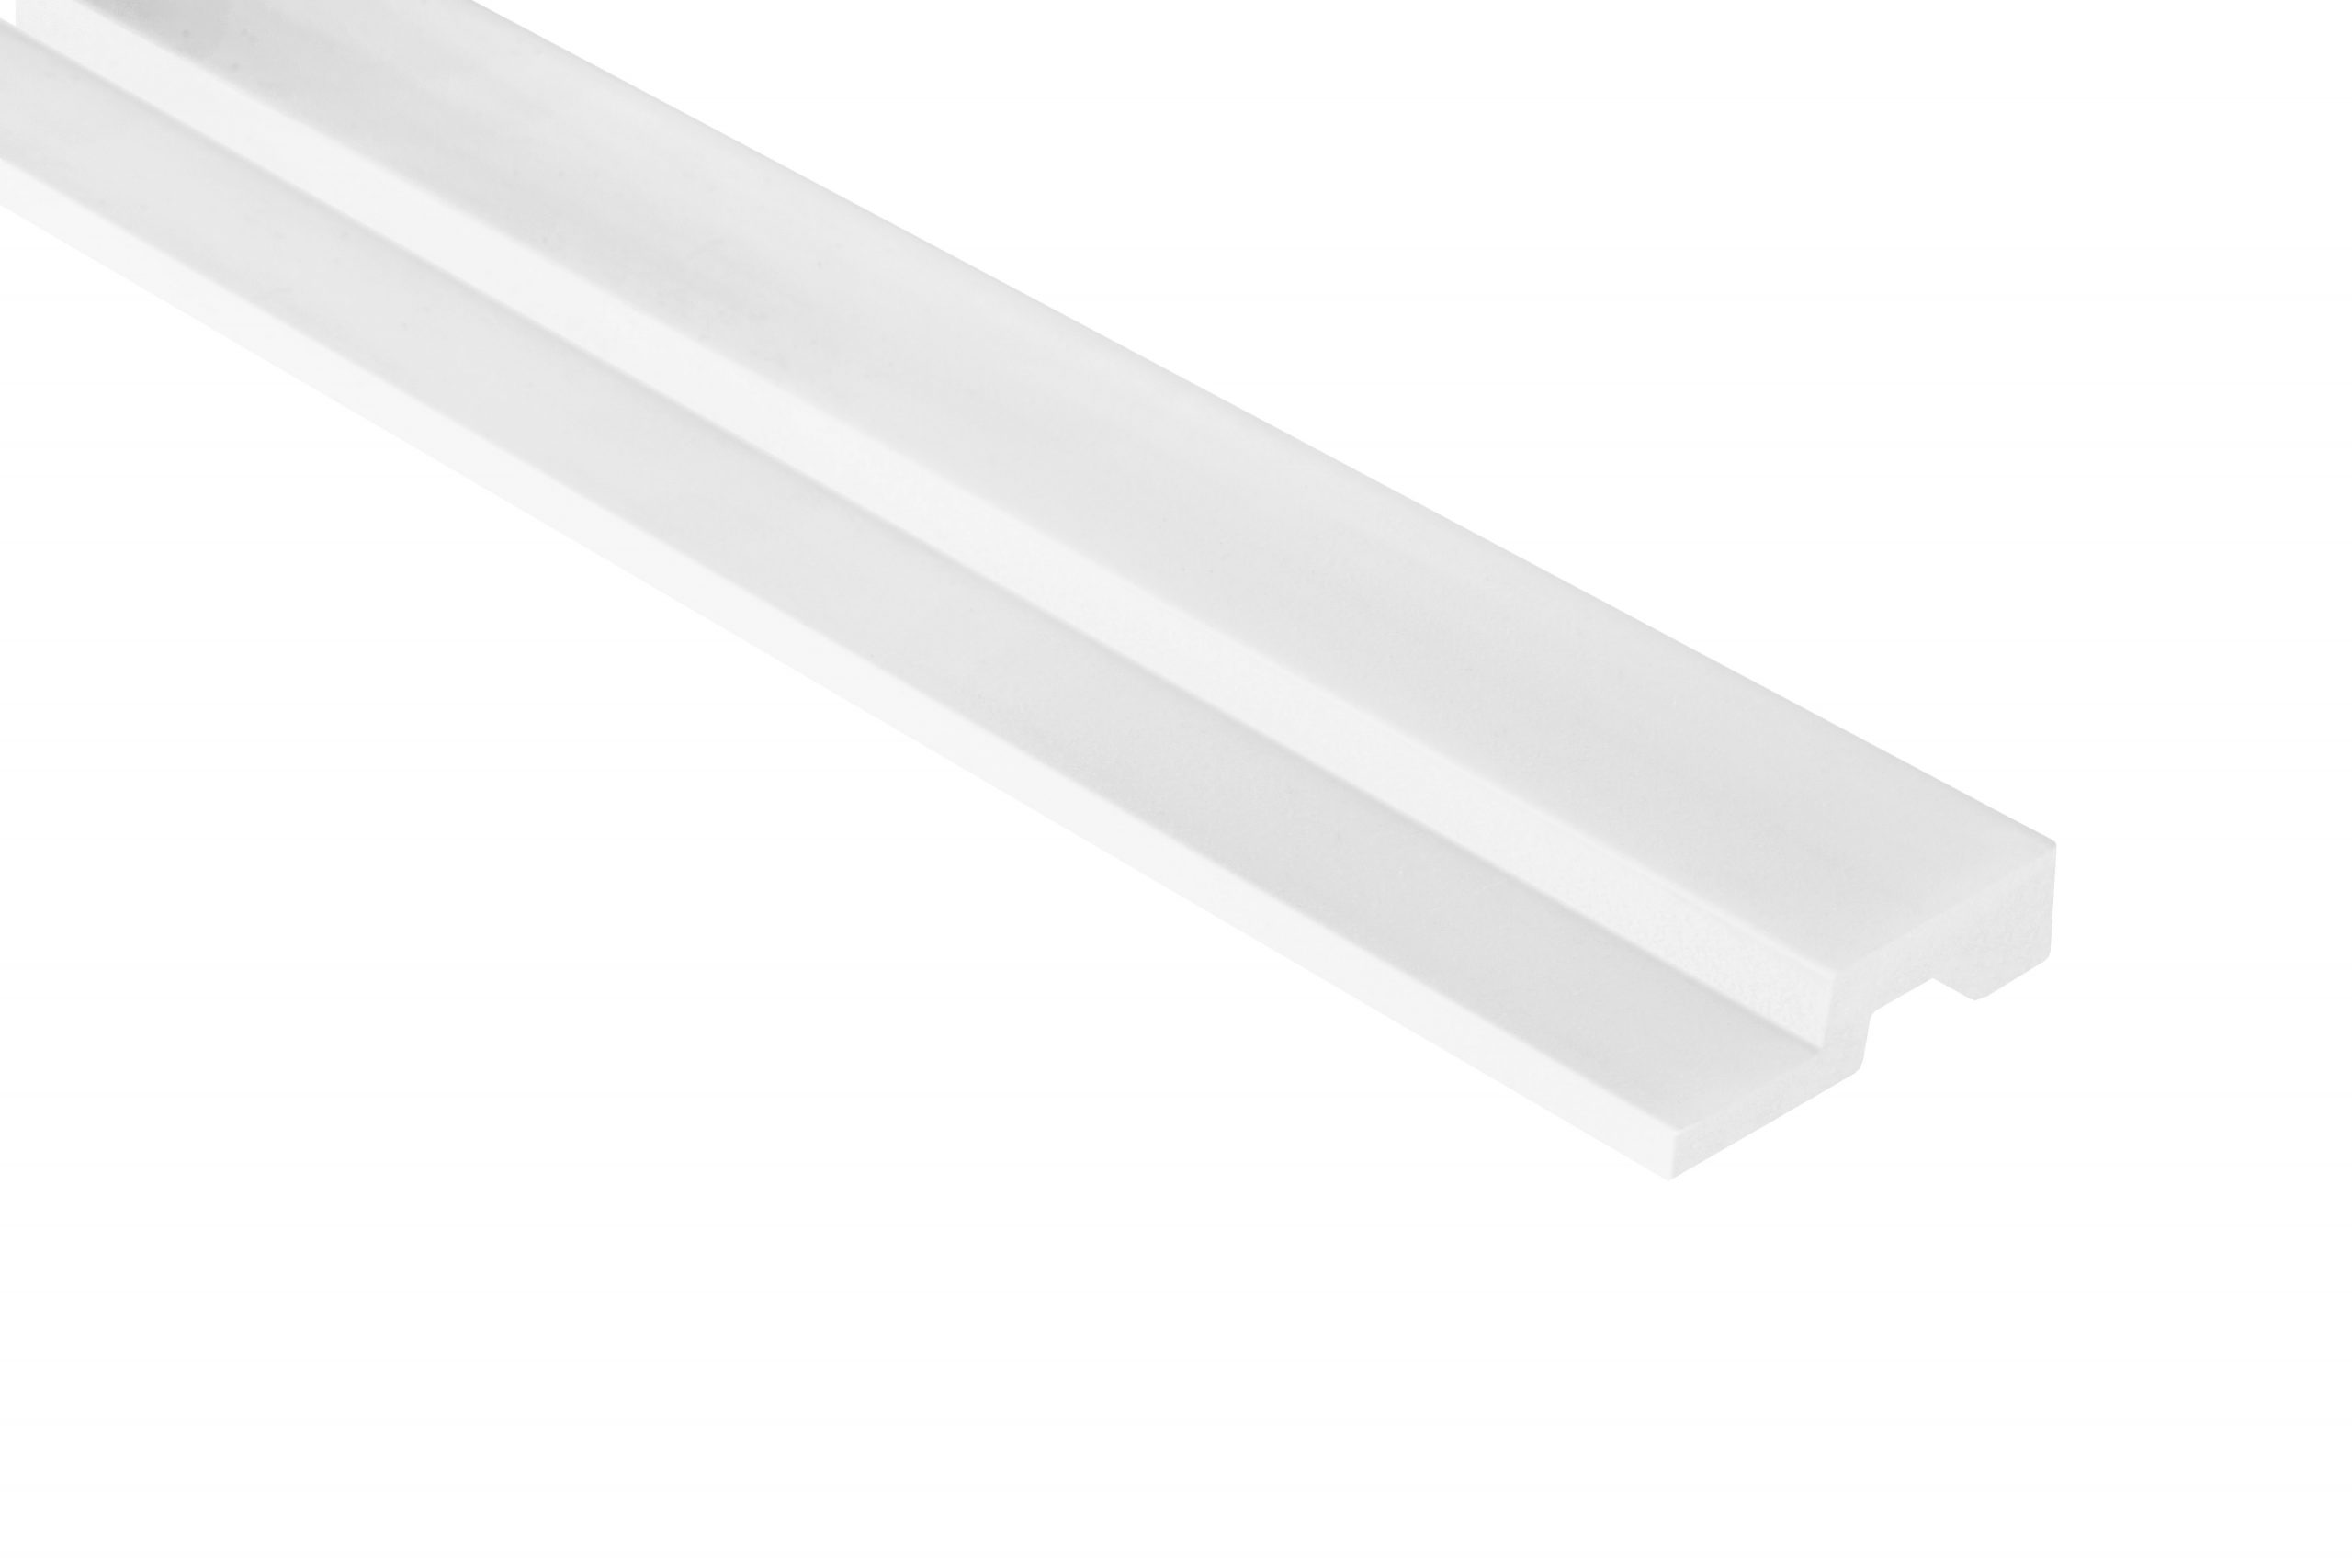 L0201R Lamelli Medio Bianco Terminale Dx- Profilo in polistrutturato, prezzo al pezzo.